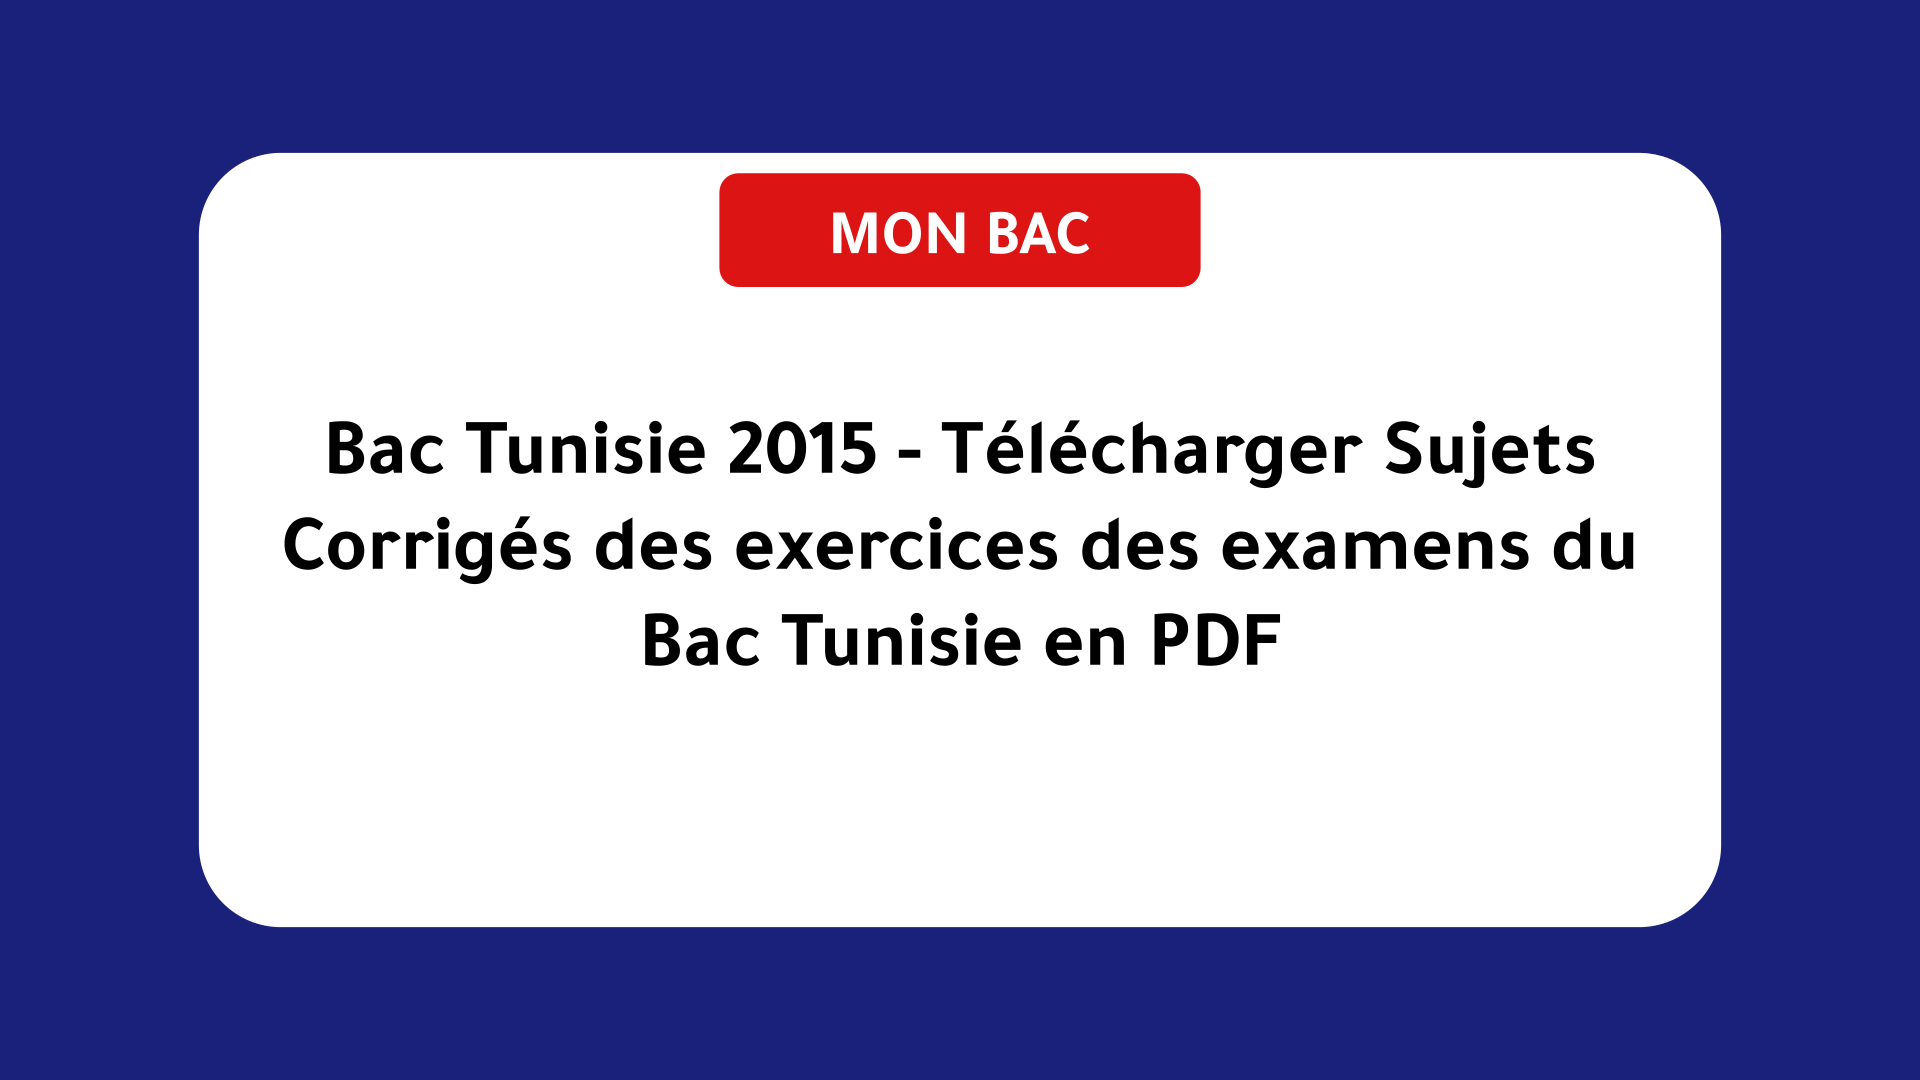 Bac Tunisie 2015 - Télécharger Sujets Corrigés des exercices des examens du Bac Tunisie en PDF